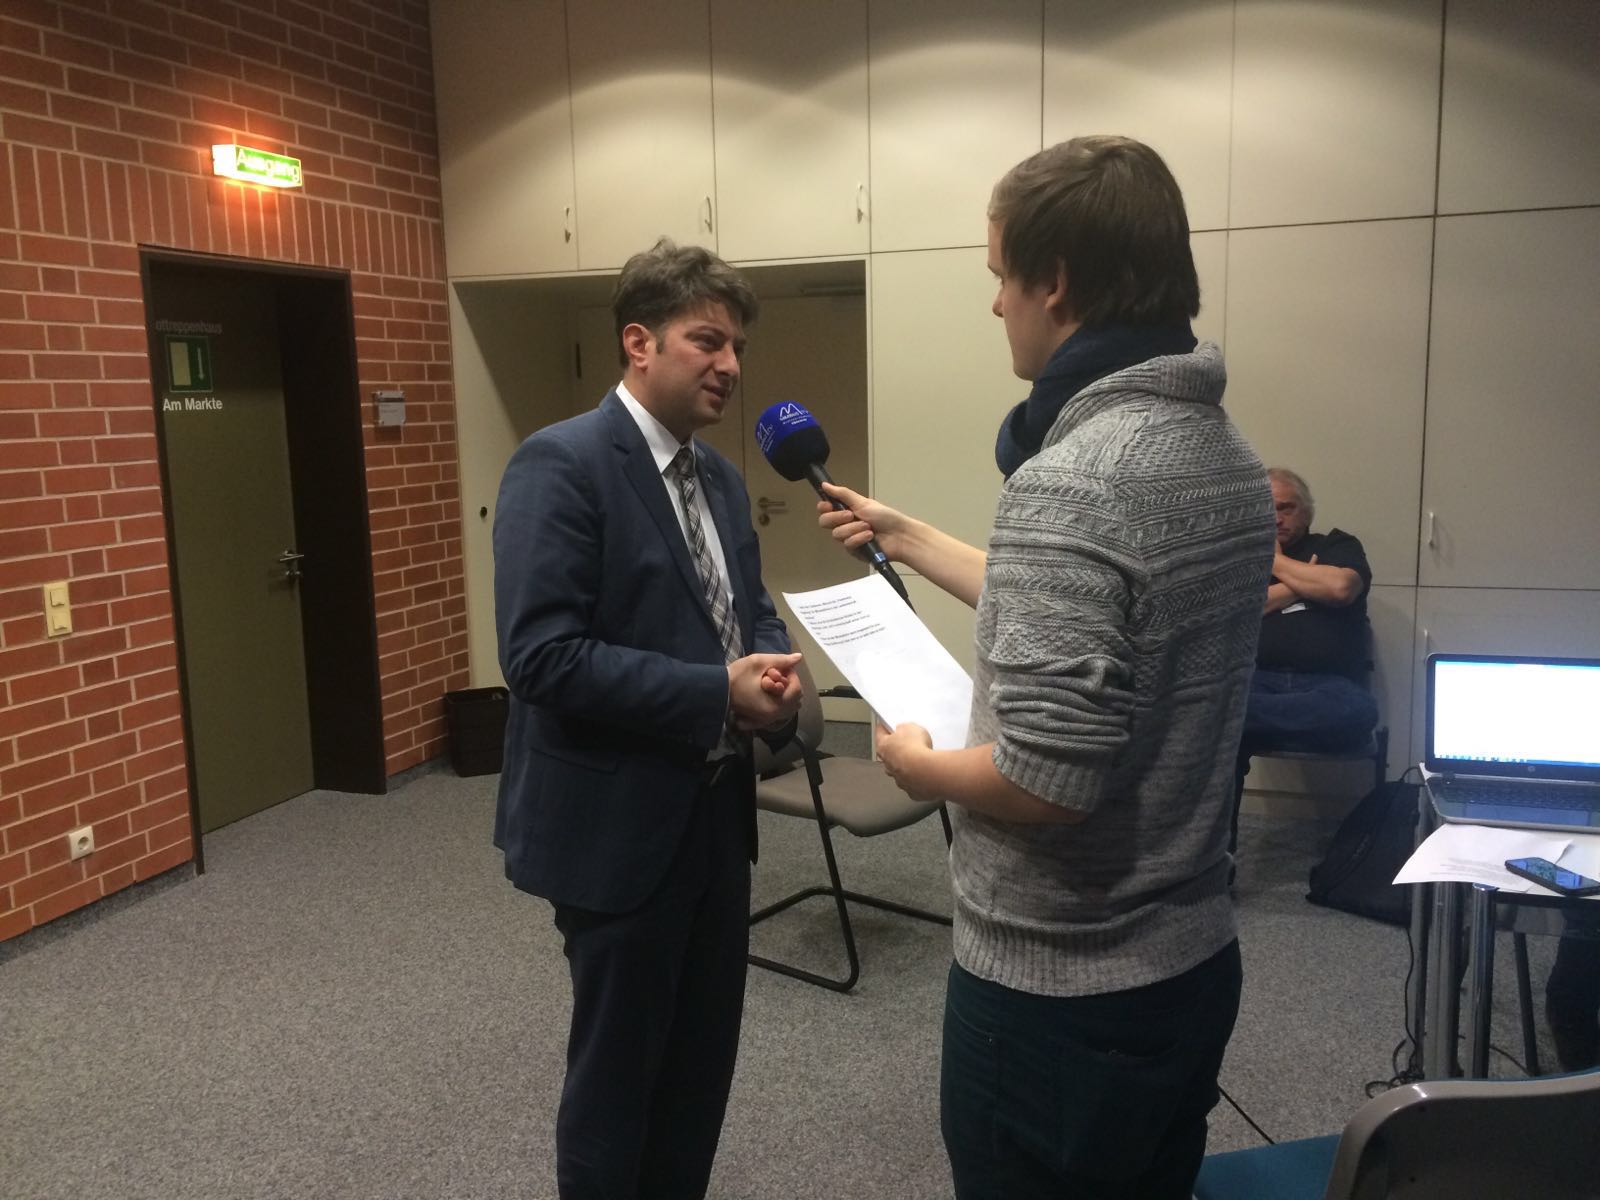 Interview mit der Medienwerkstatt Berufsbildender Schulen aus Hannover am Rande des Plenums.